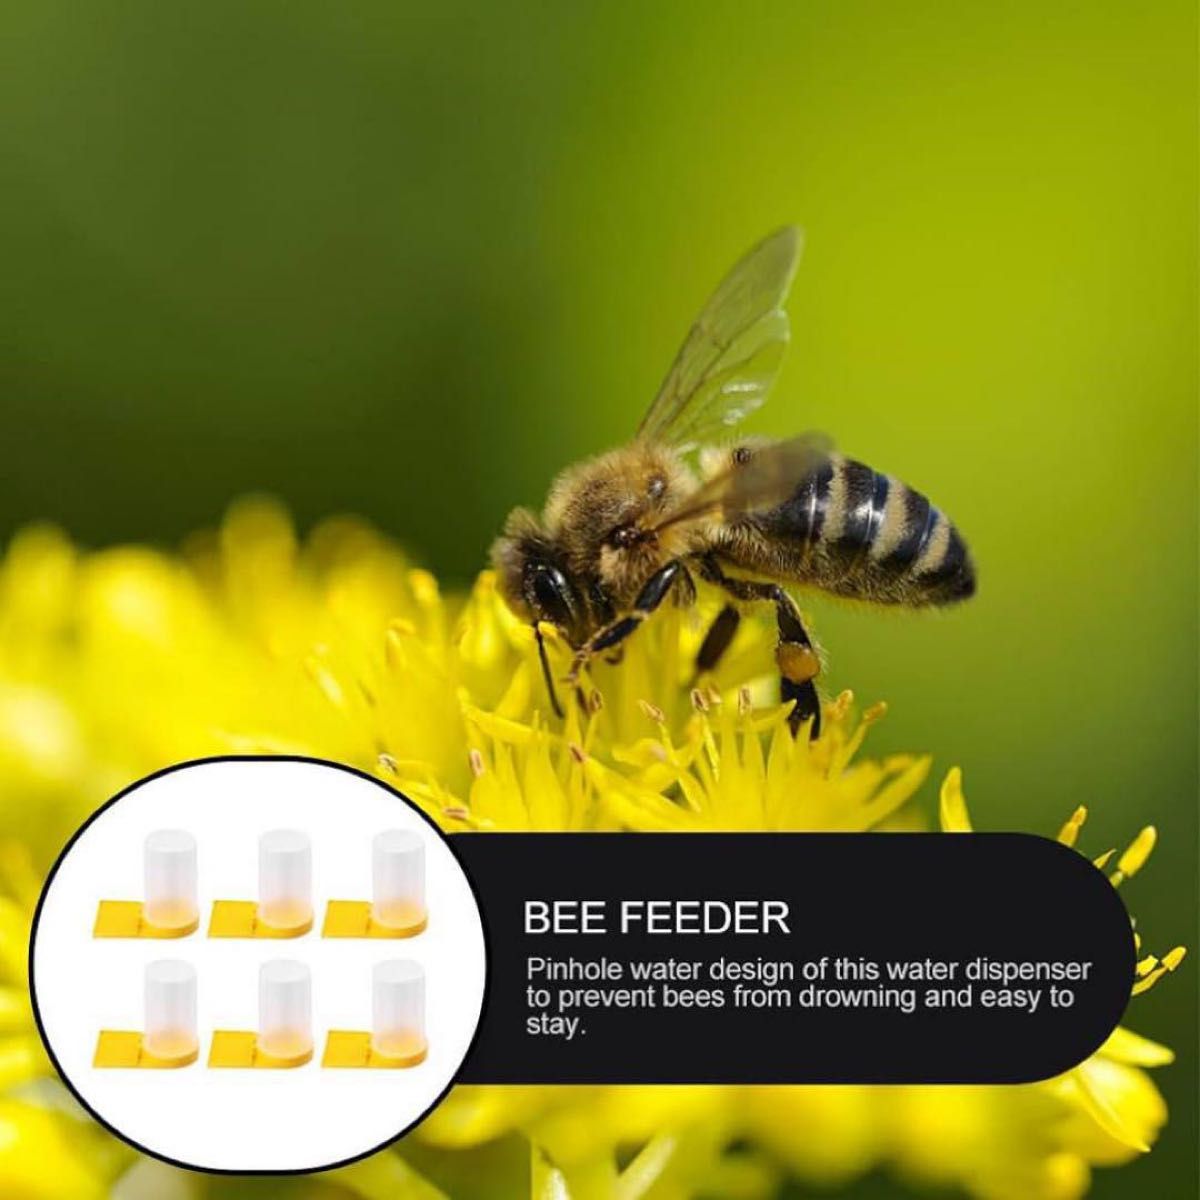 蜜蜂給餌器 給水器 ミツバチ ビーフィーダー 給餌器 蜂給水ツール シロップ水入れ ミツバチフィーダ 運び便利 ビーフィーダー 